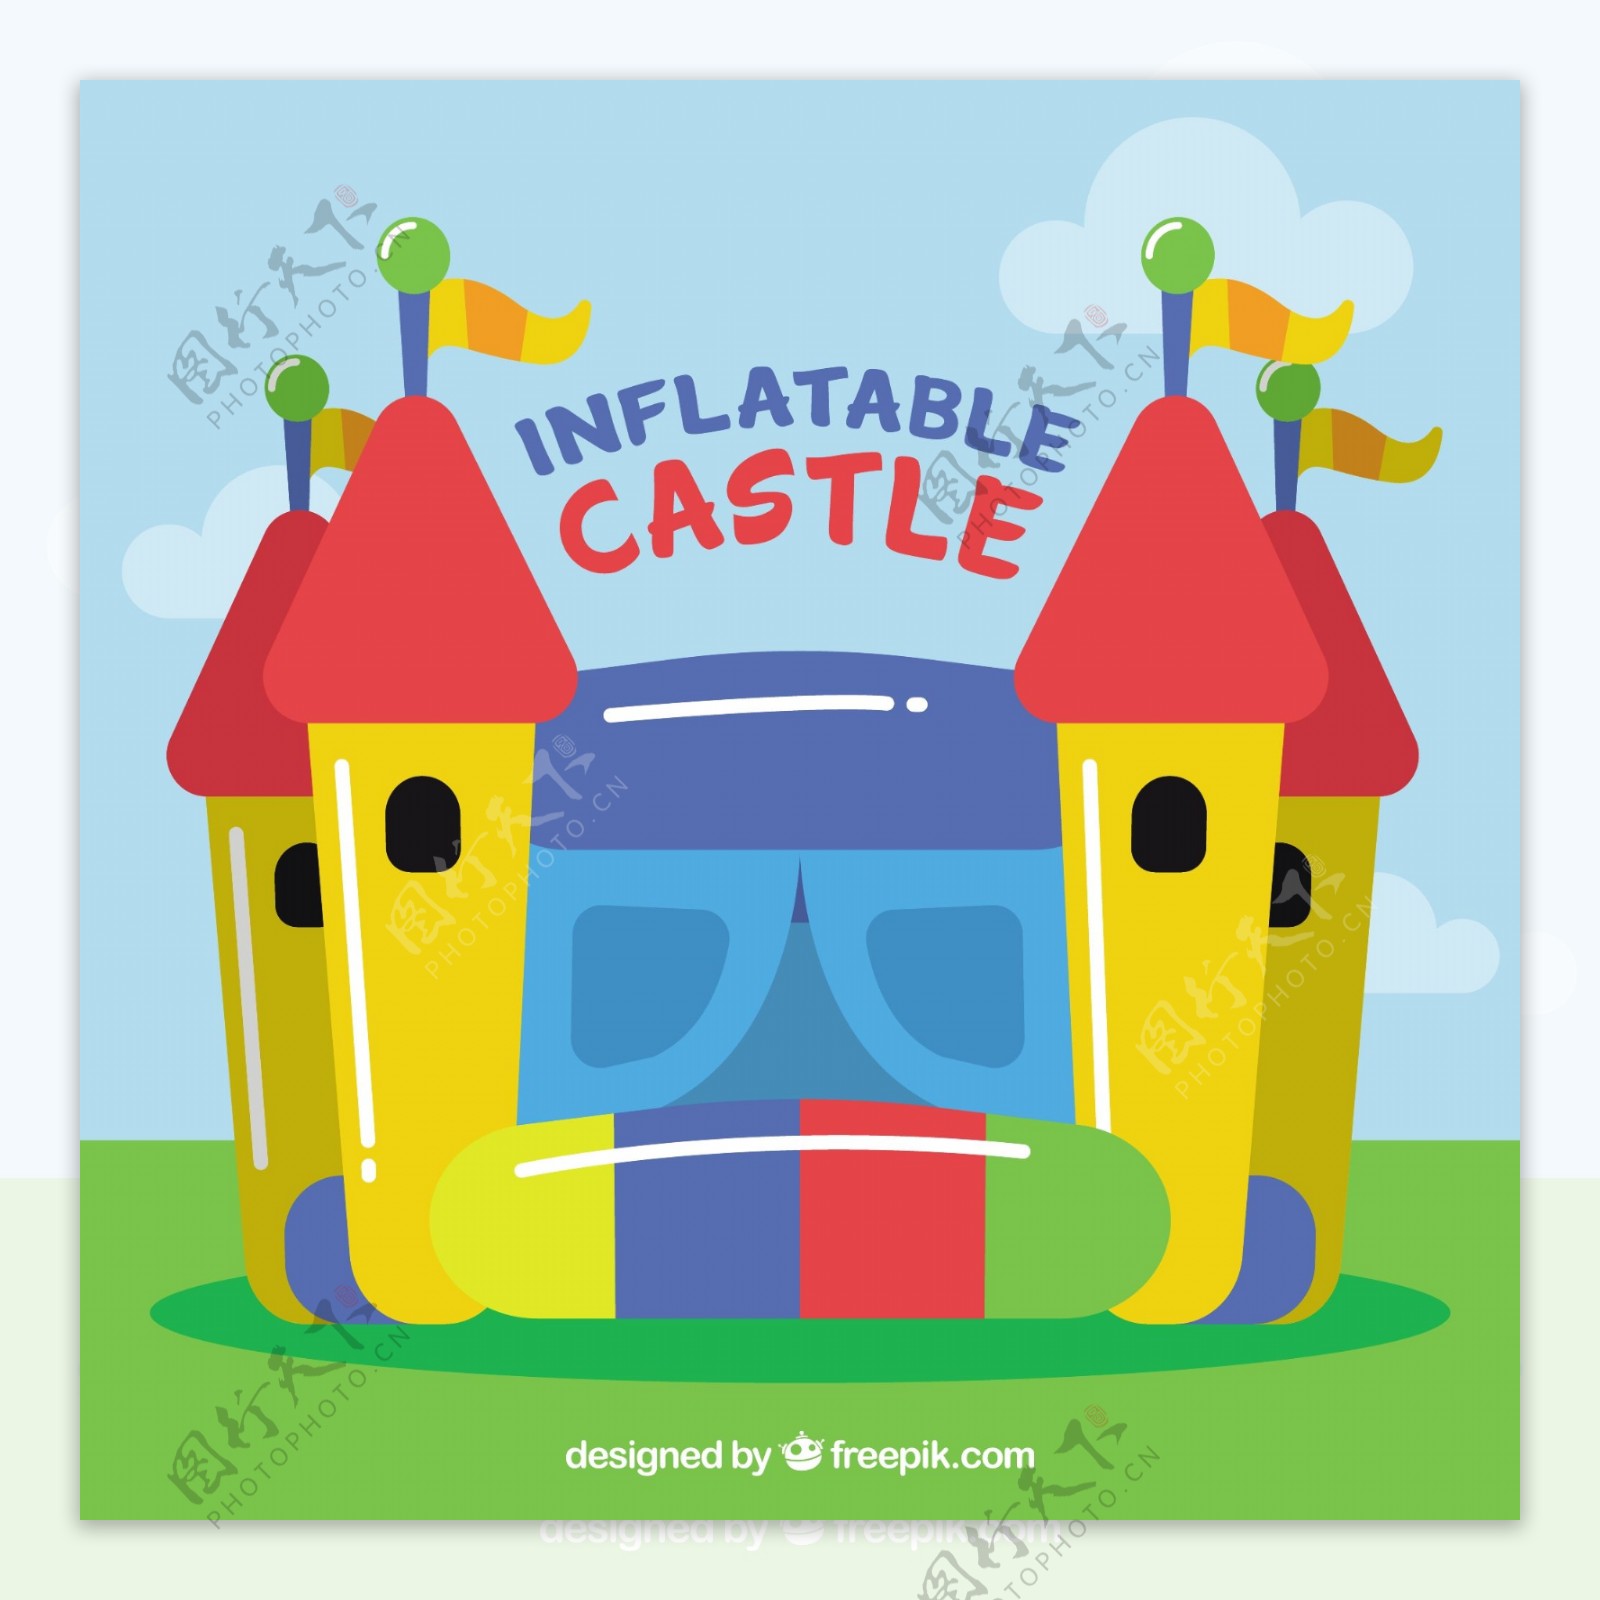 彩色充气城堡背景